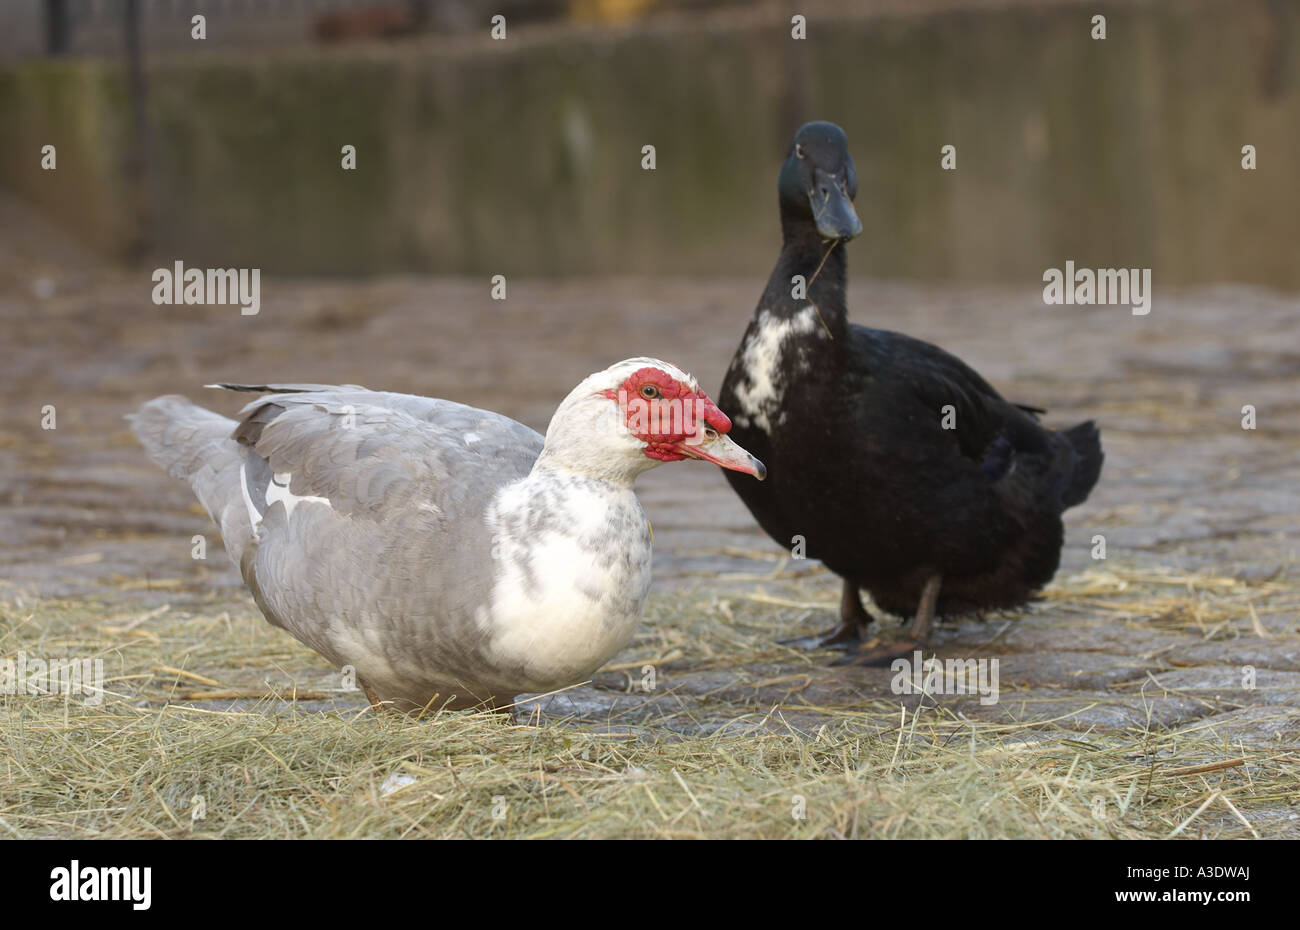 Muscovy ducks at Hackney City Farm London Stock Photo